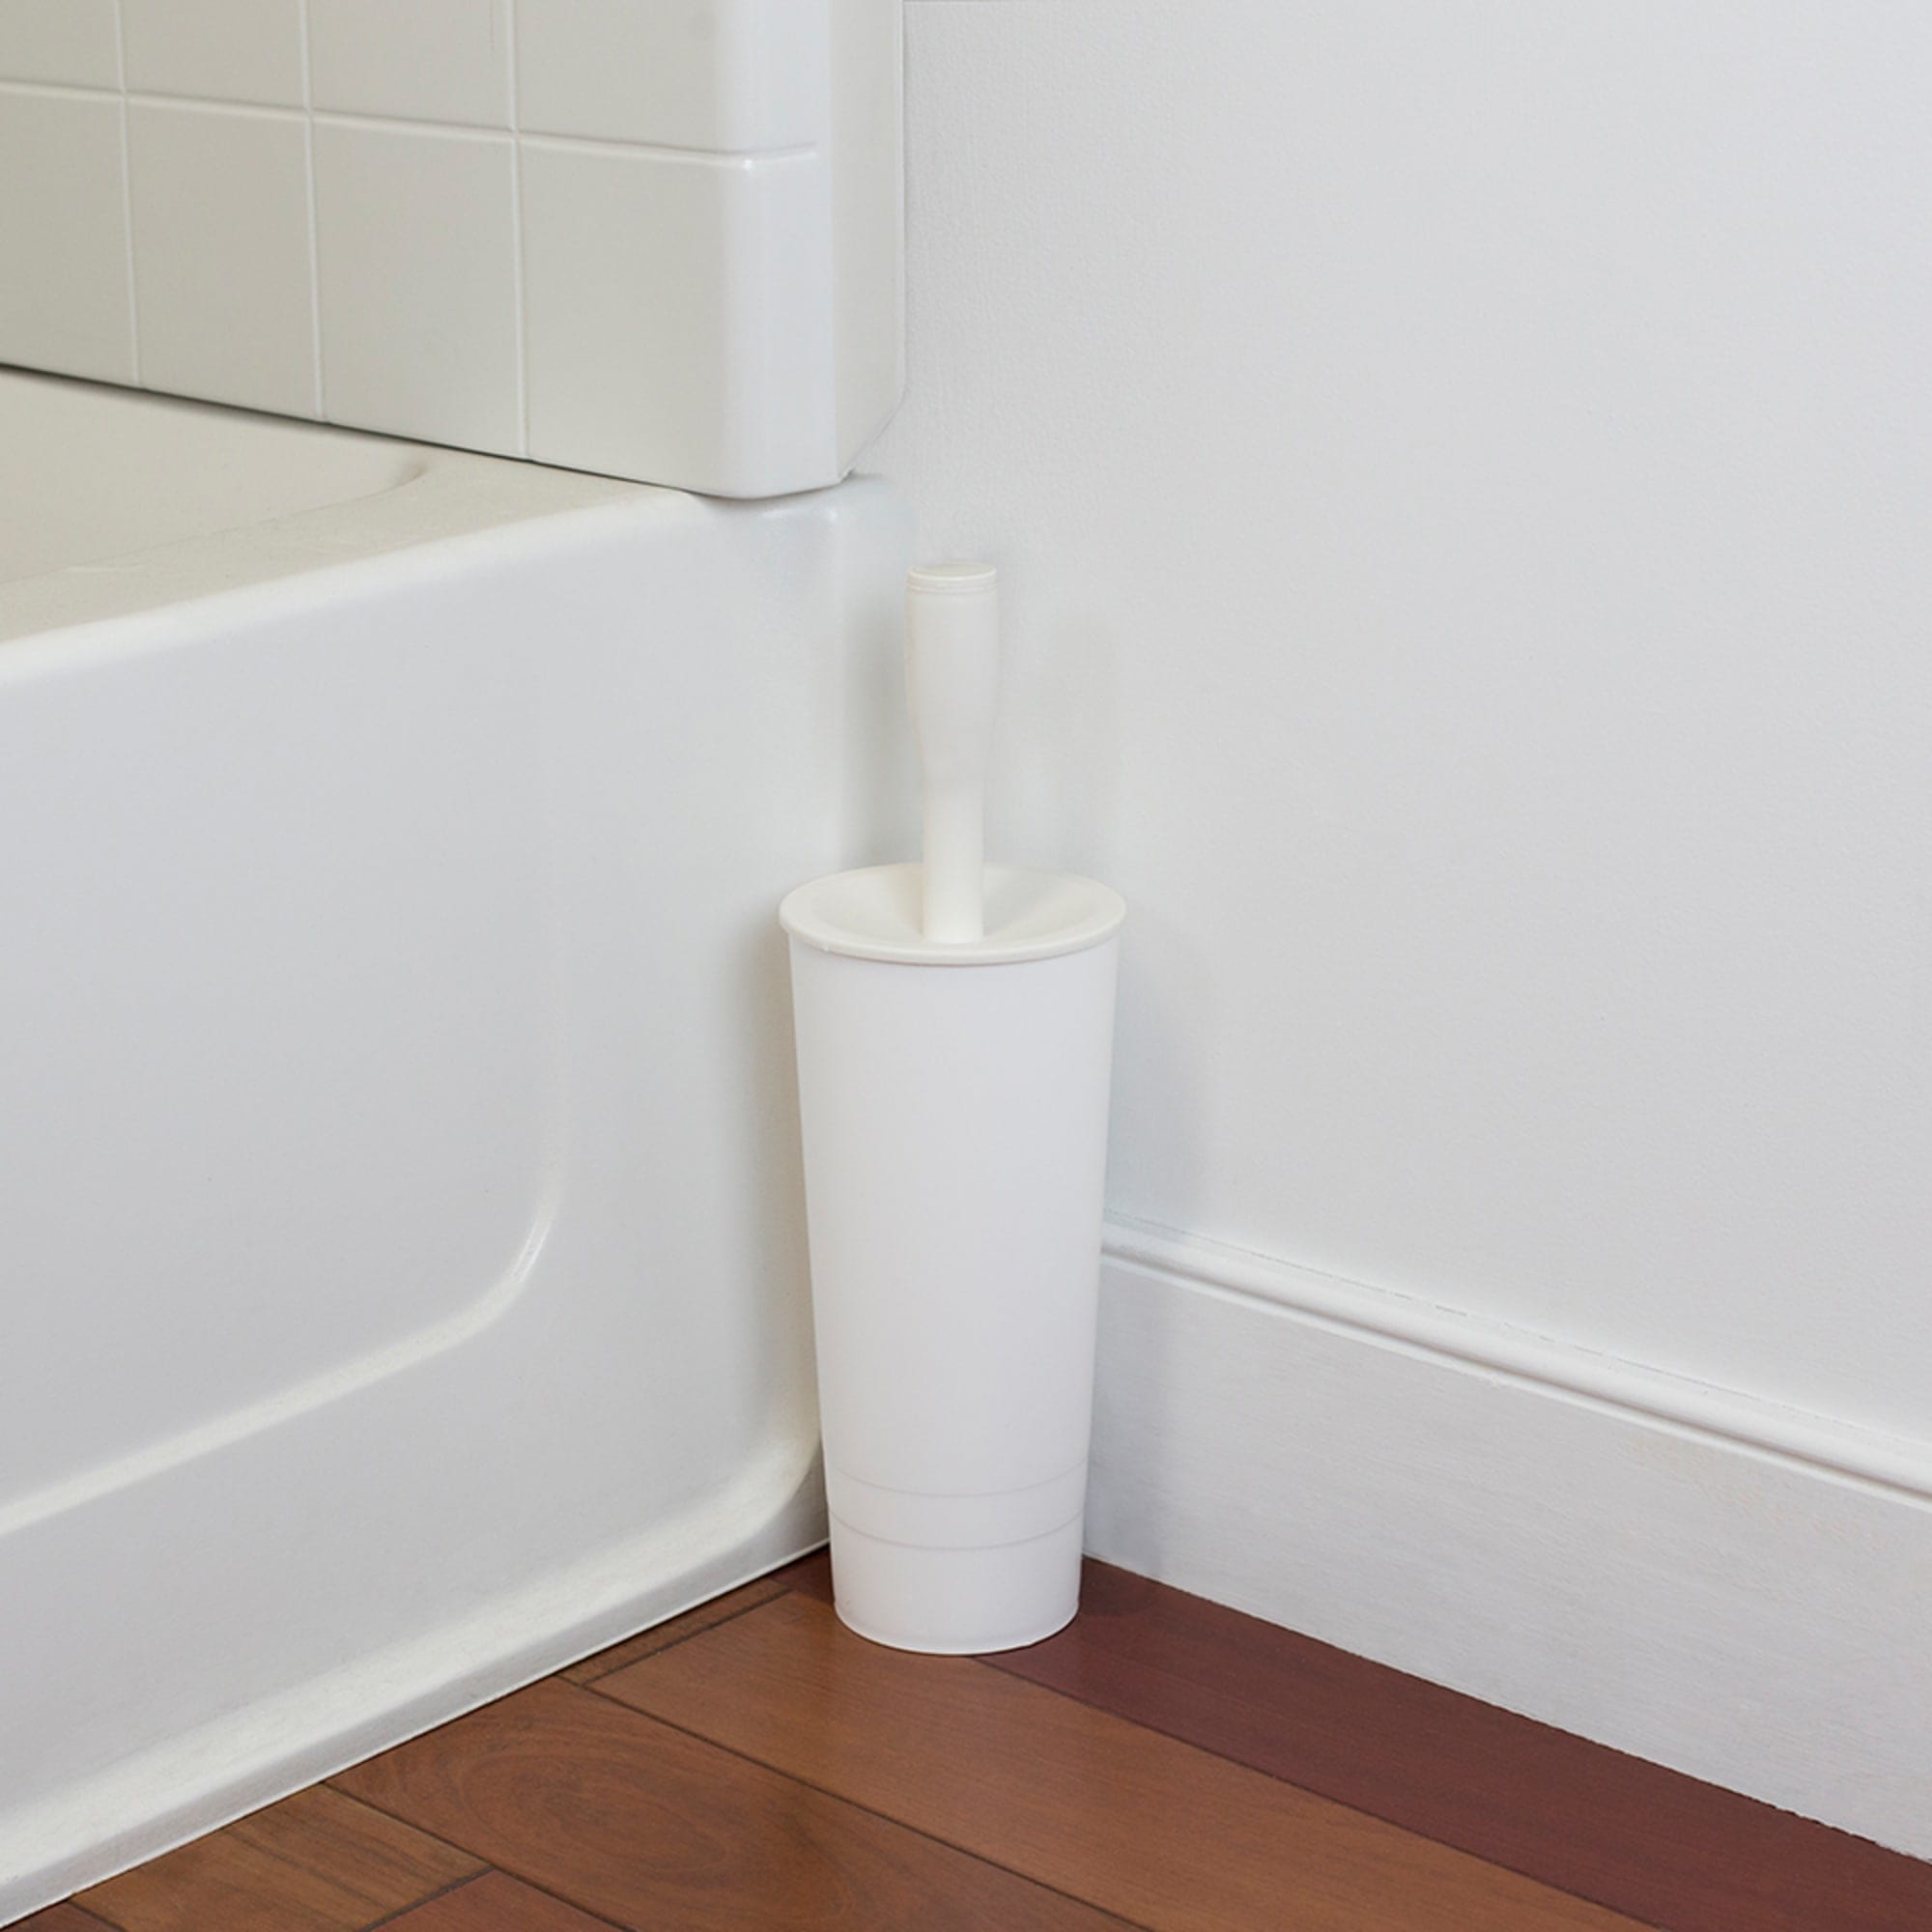 Home Basics Plastic Toilet Brush Holder, White $6.00 EACH, CASE PACK OF 12